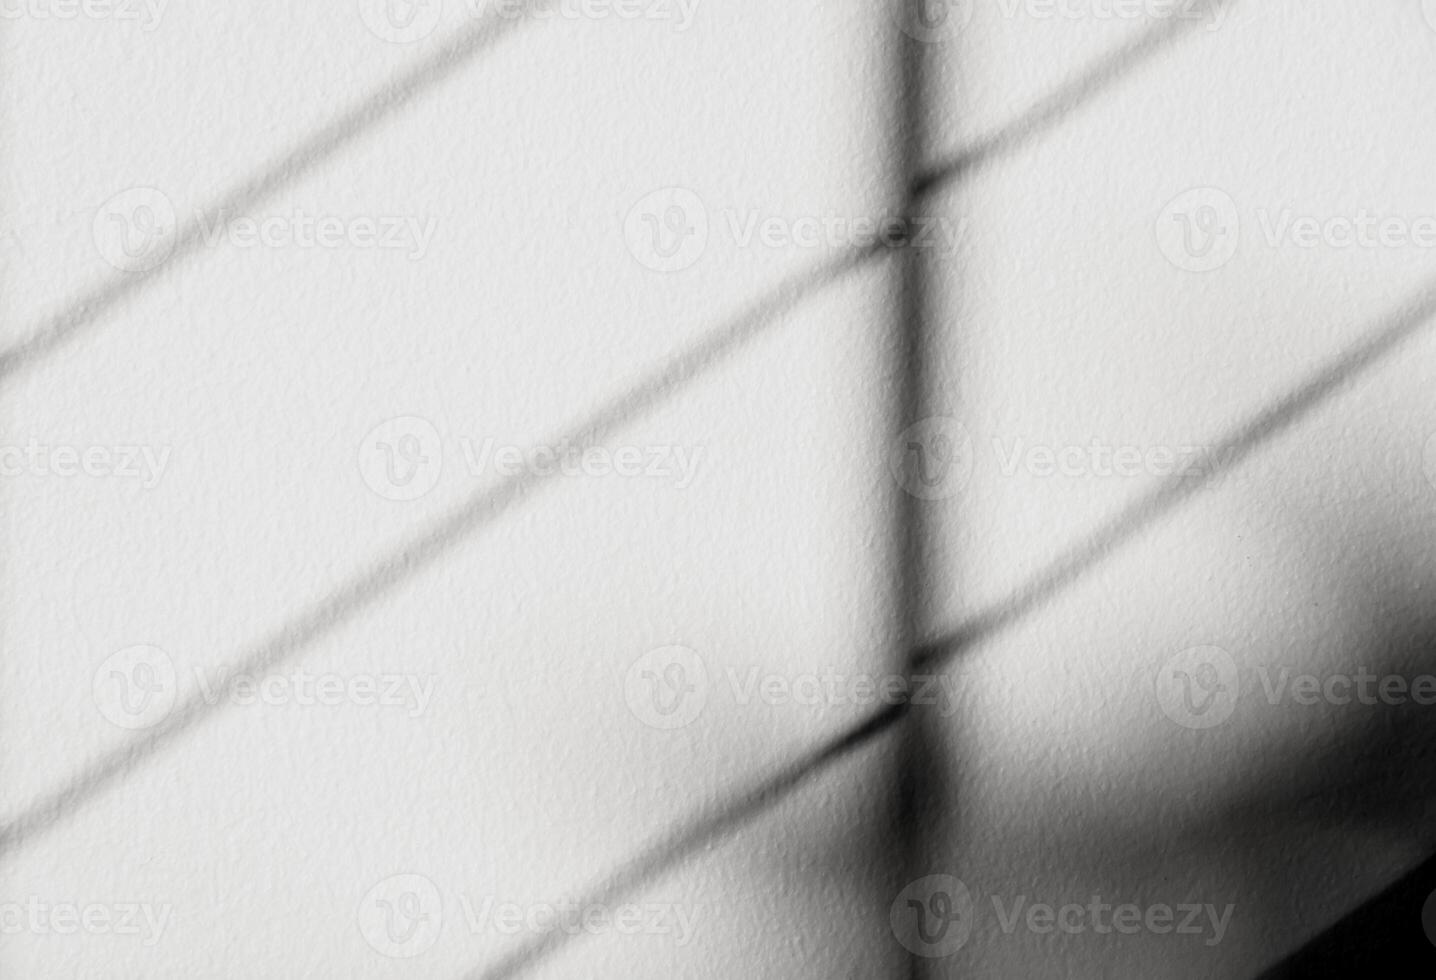 gris antecedentes con brillante ligero de ventana marco sombra en hormigón pared superficie textura,vacío blanco cemento estudio habitación con luz de sol reflejar en yeso pintura, telón de fondo para producto diseño presente foto